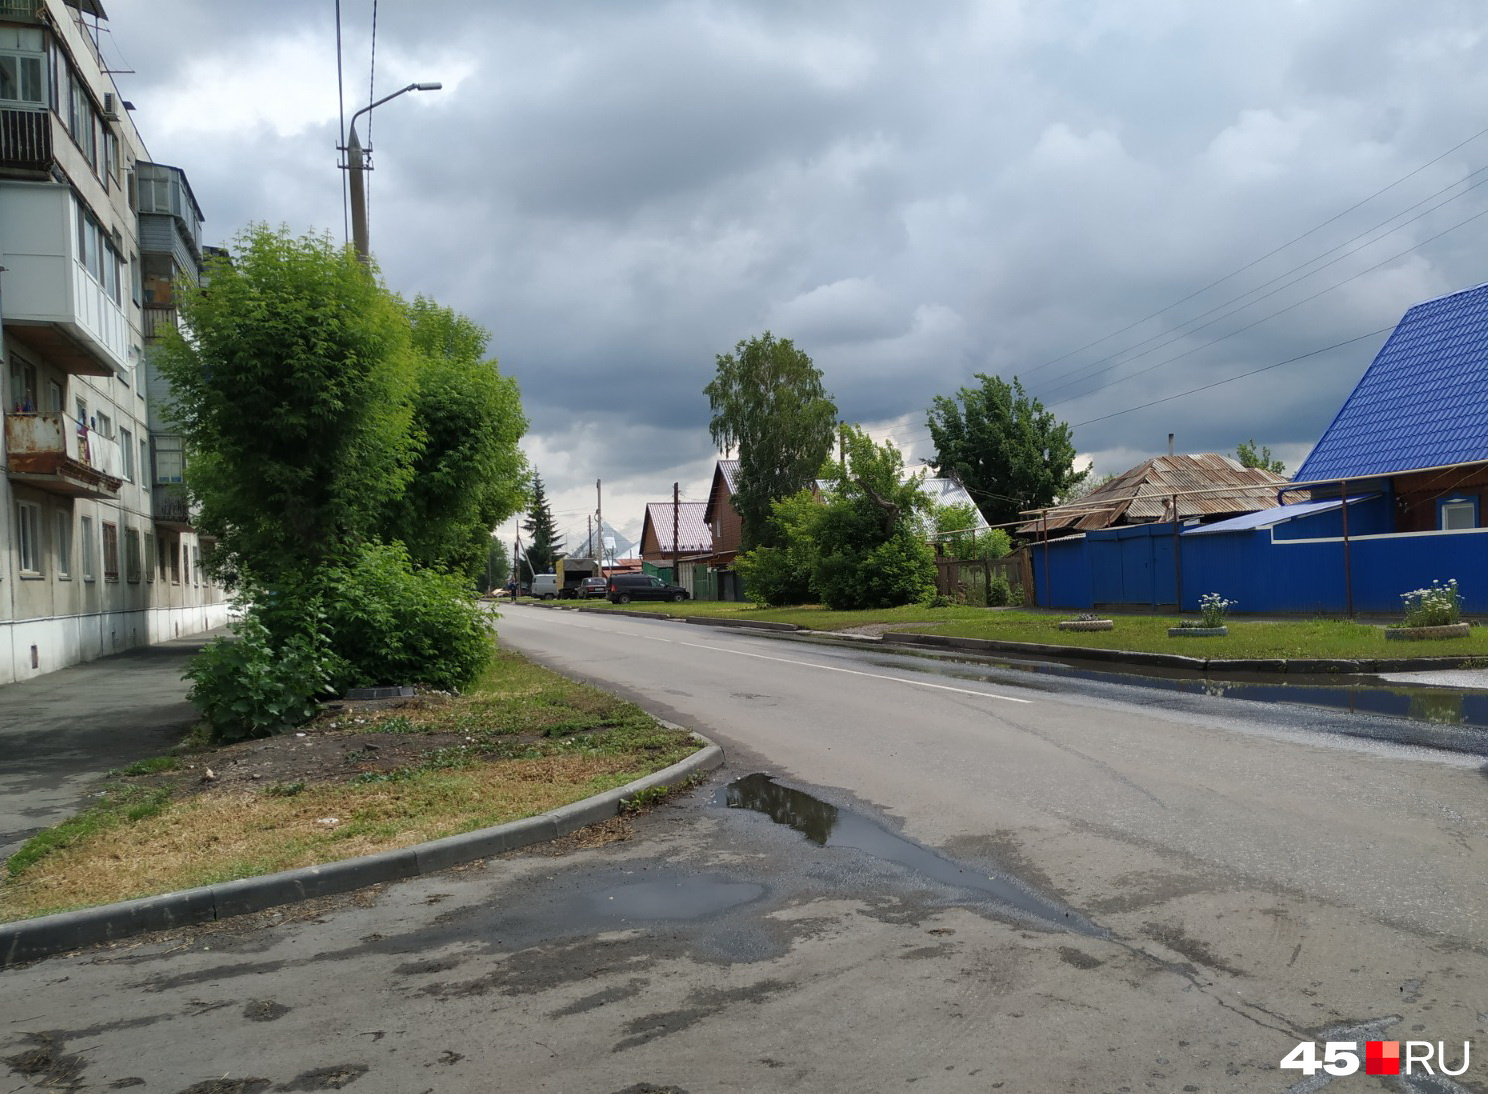 Вода при ливне стекает с дороги по Черняховского во дворы соседних домов